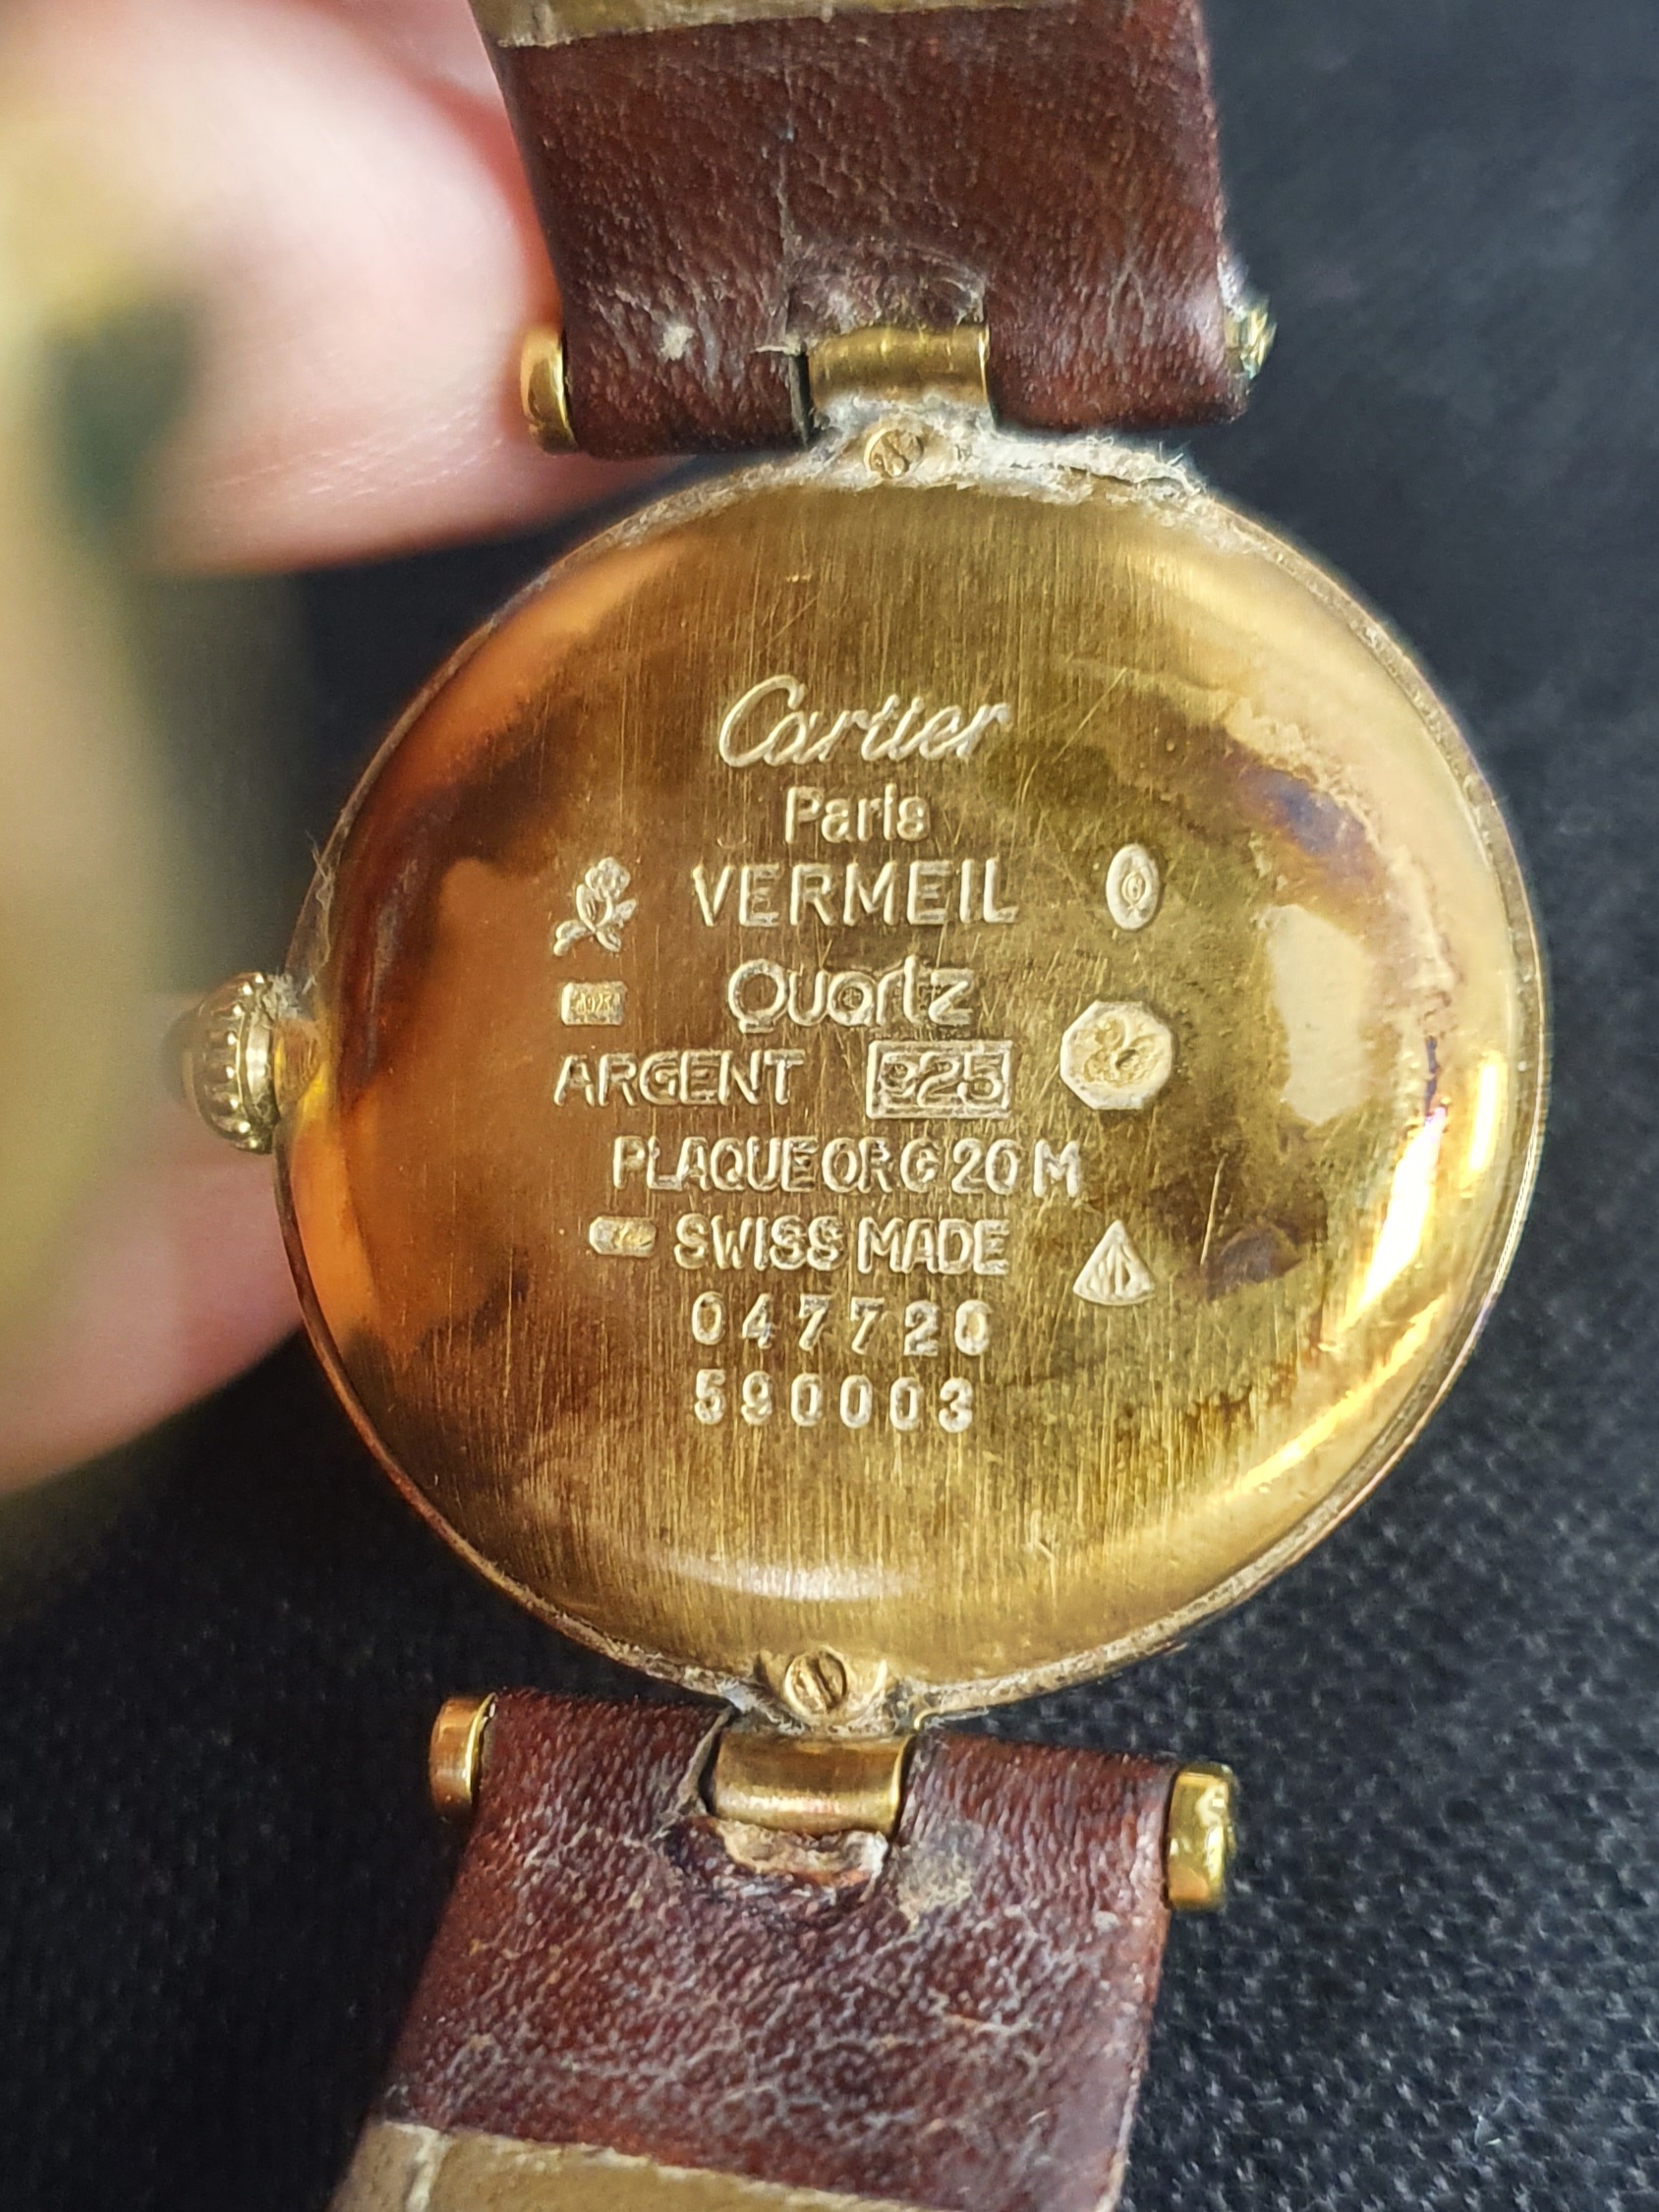 Cartier Vermeil Quartz Wristwatch - Image 2 of 2